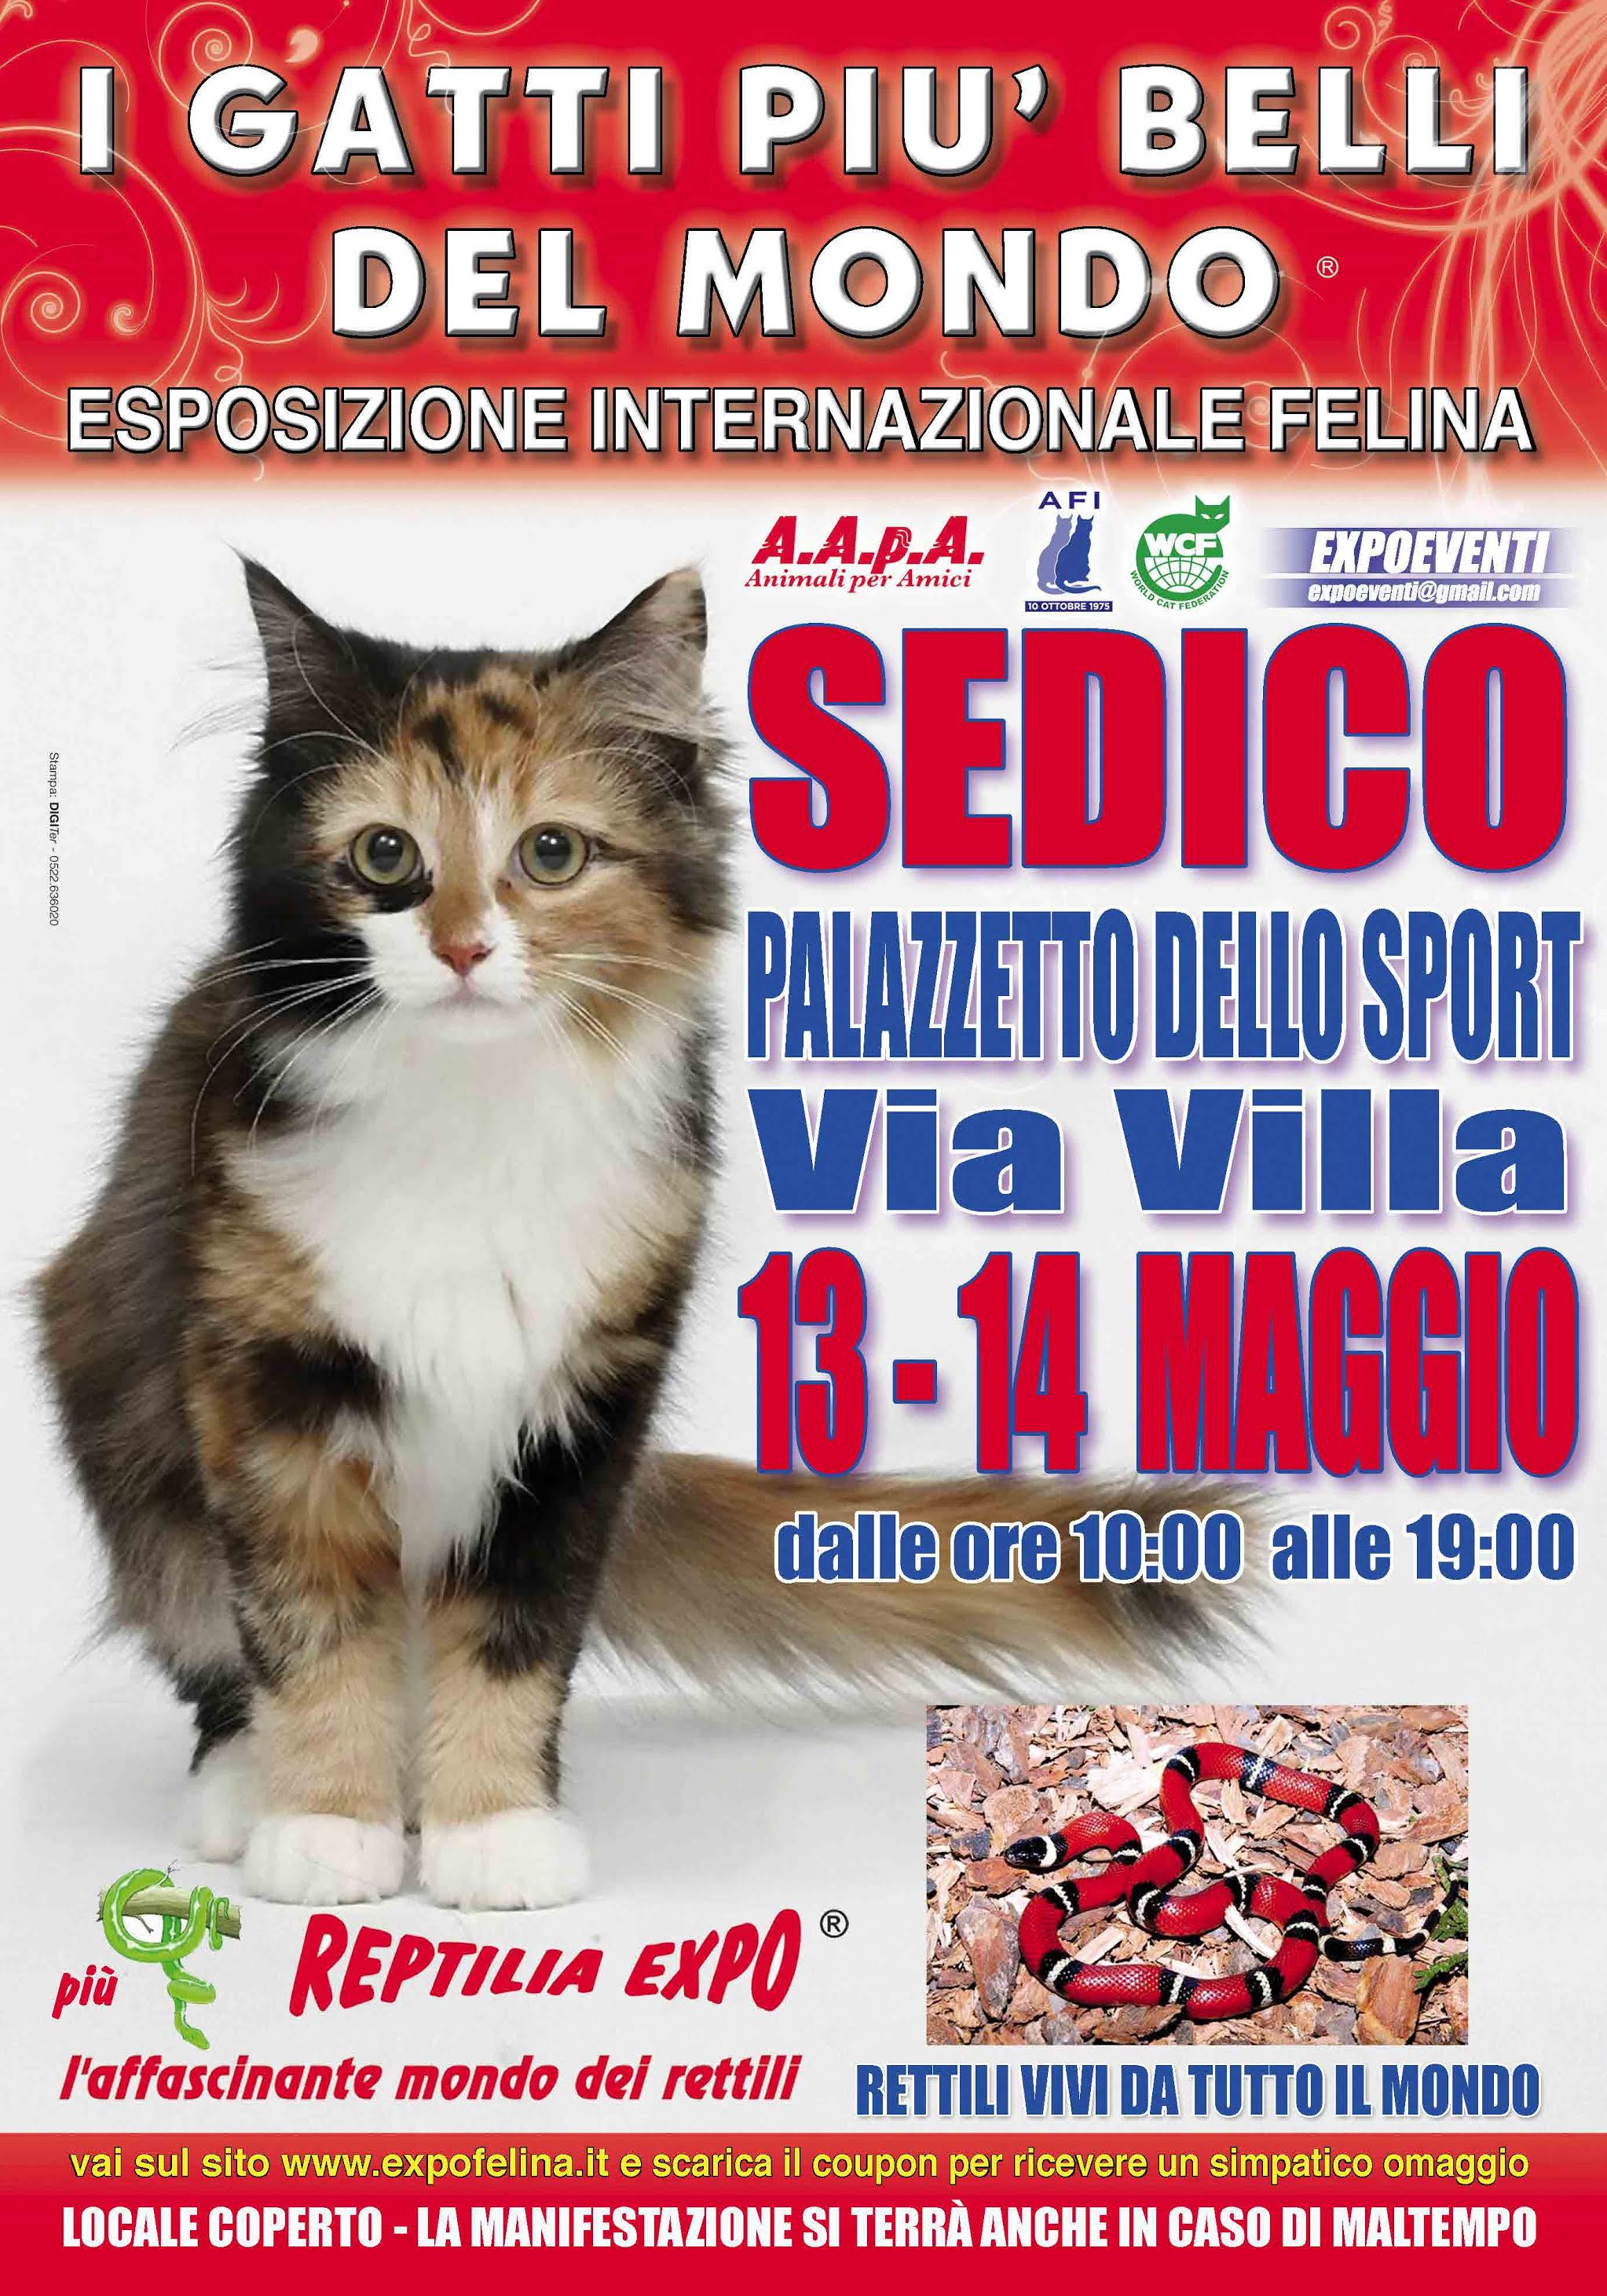 I GATTI PIU' BELLI DEL MONDO in passerella a SEDICO (Belluno) nell'Esposizione Internazionale Felina